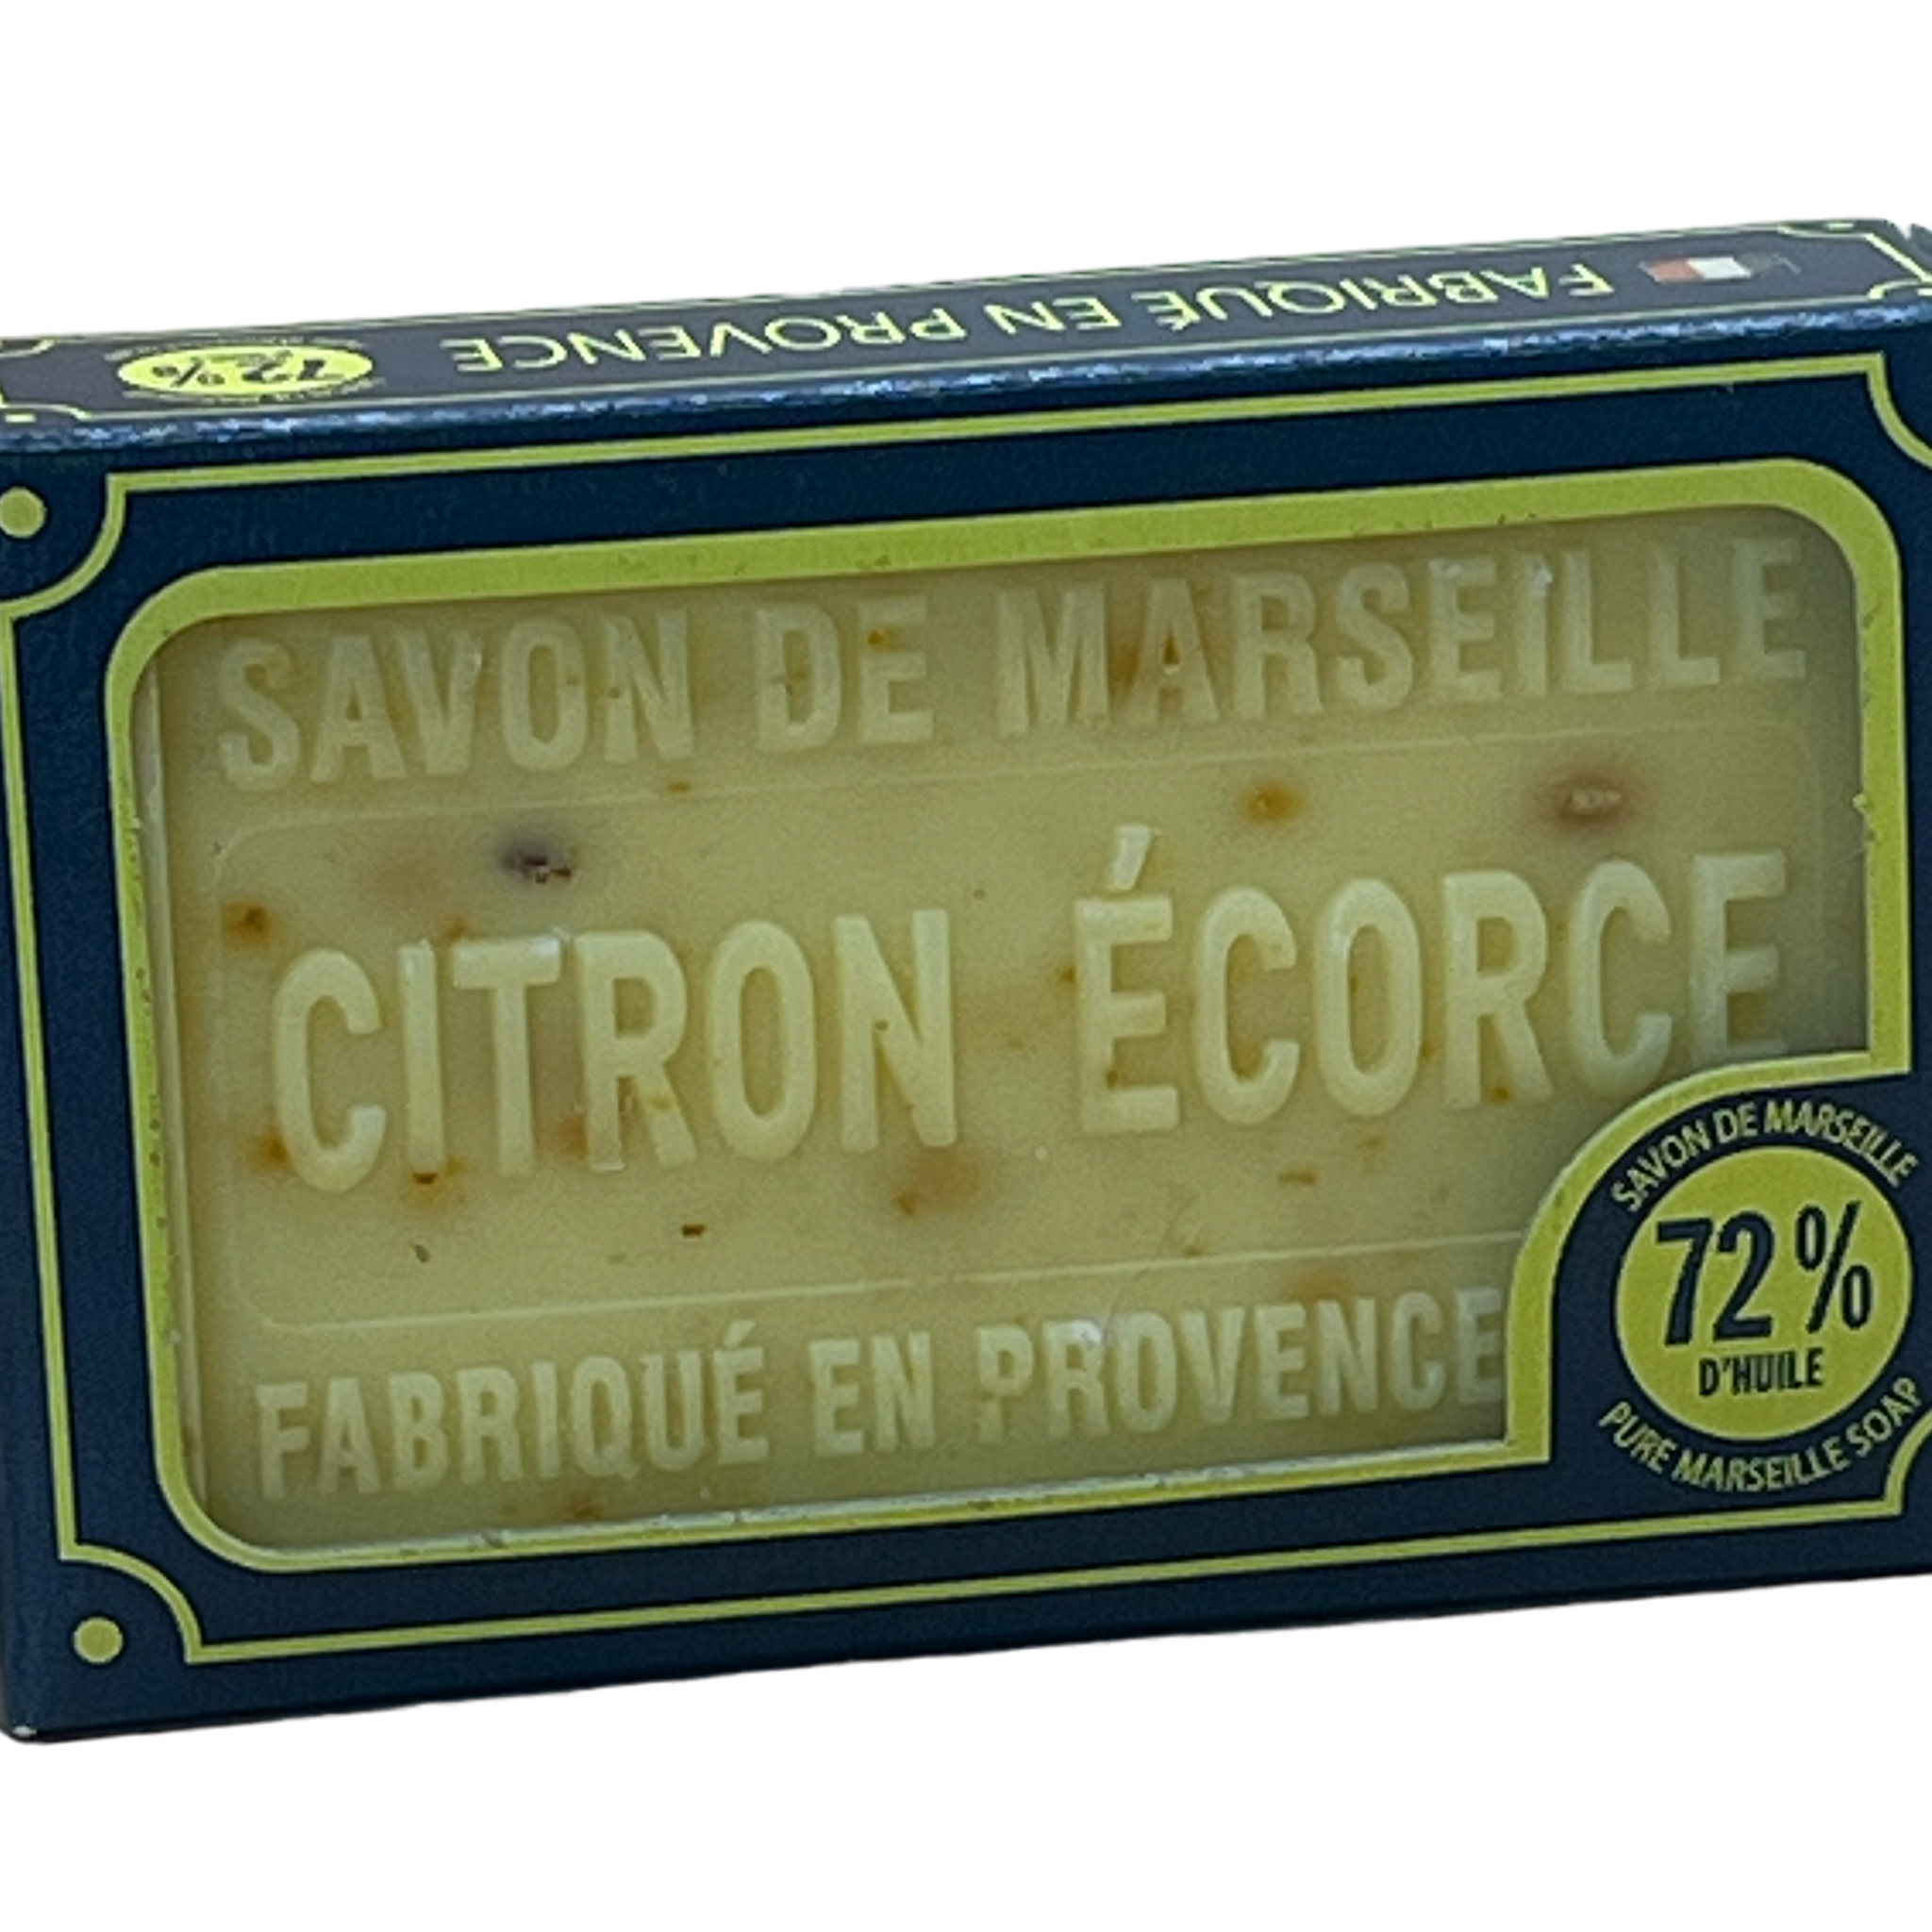 Exfoliating Lemon (Citron Écorce), Marseille Soap with Shea Butter, 100g